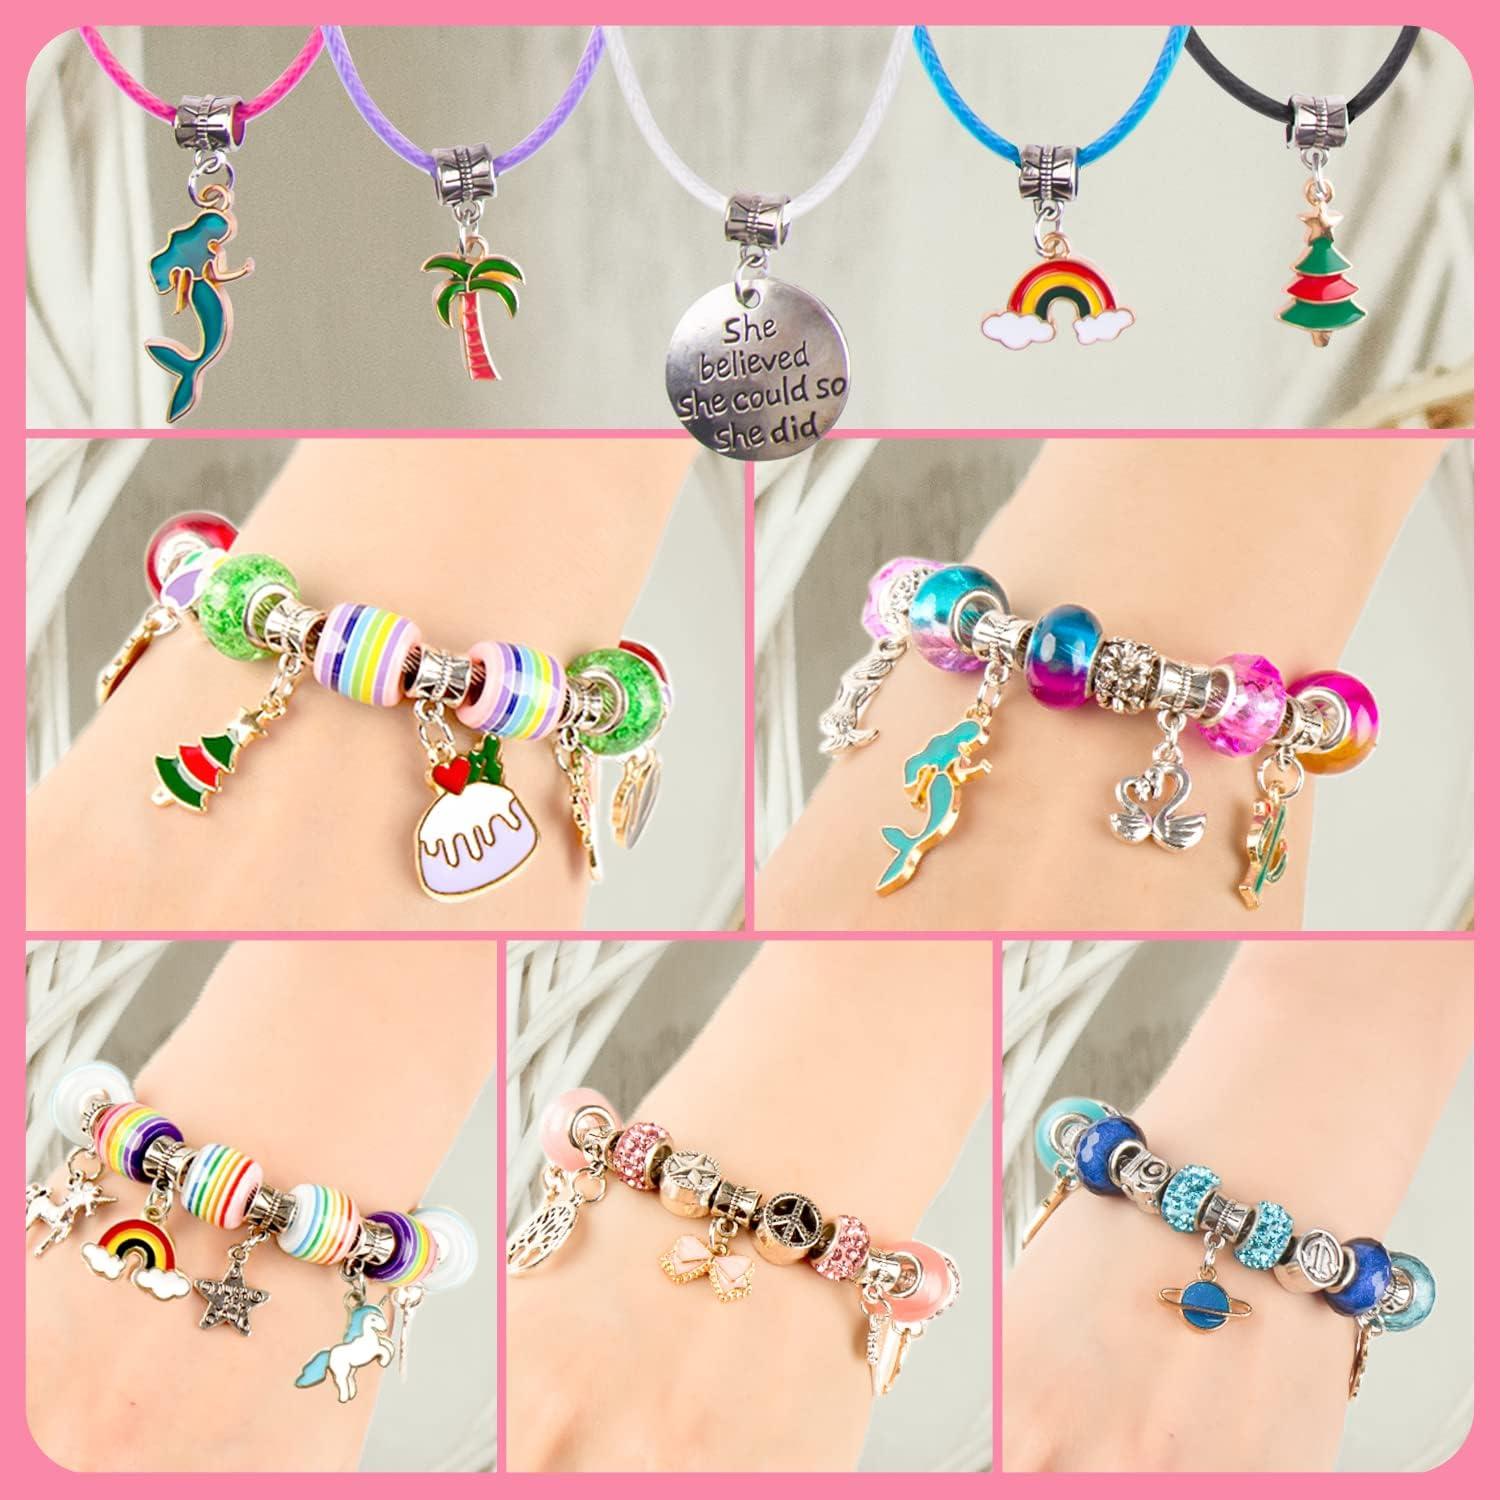 Friendship Bracelet Making Kit, Gift for 7 8 9 10 11 12 Year Old Girls,  Crafts for Kids Ages 8-12, Friendship Bracelets Kits for Girl Toys Age 7-8